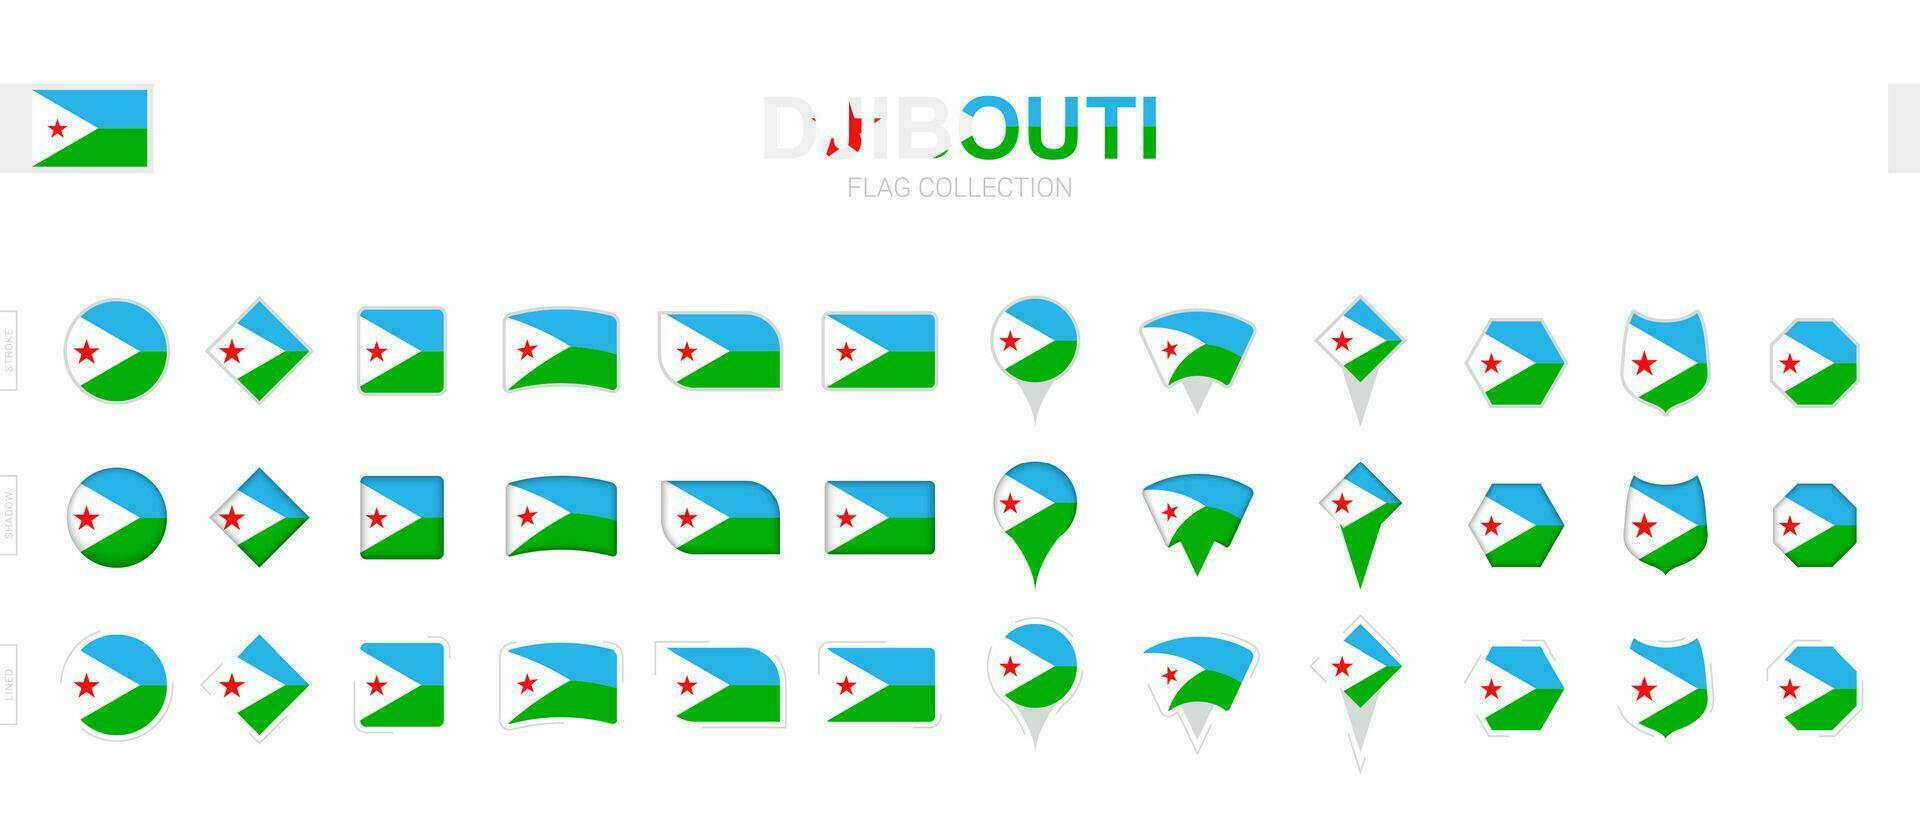 grande colección de djibouti banderas de varios formas y efectos vector